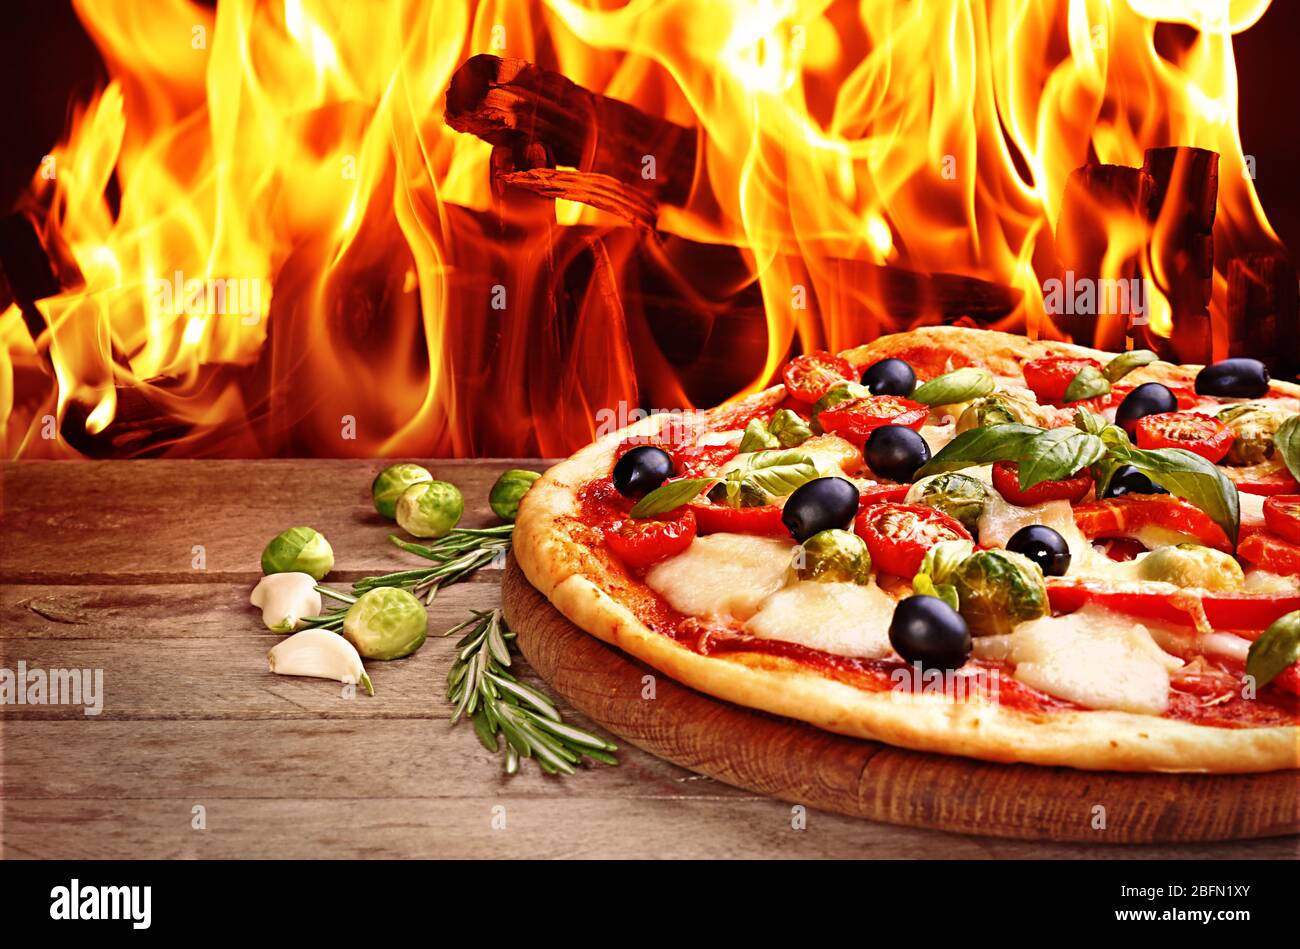 пицца из дровяной печи неаполитанская фото 103